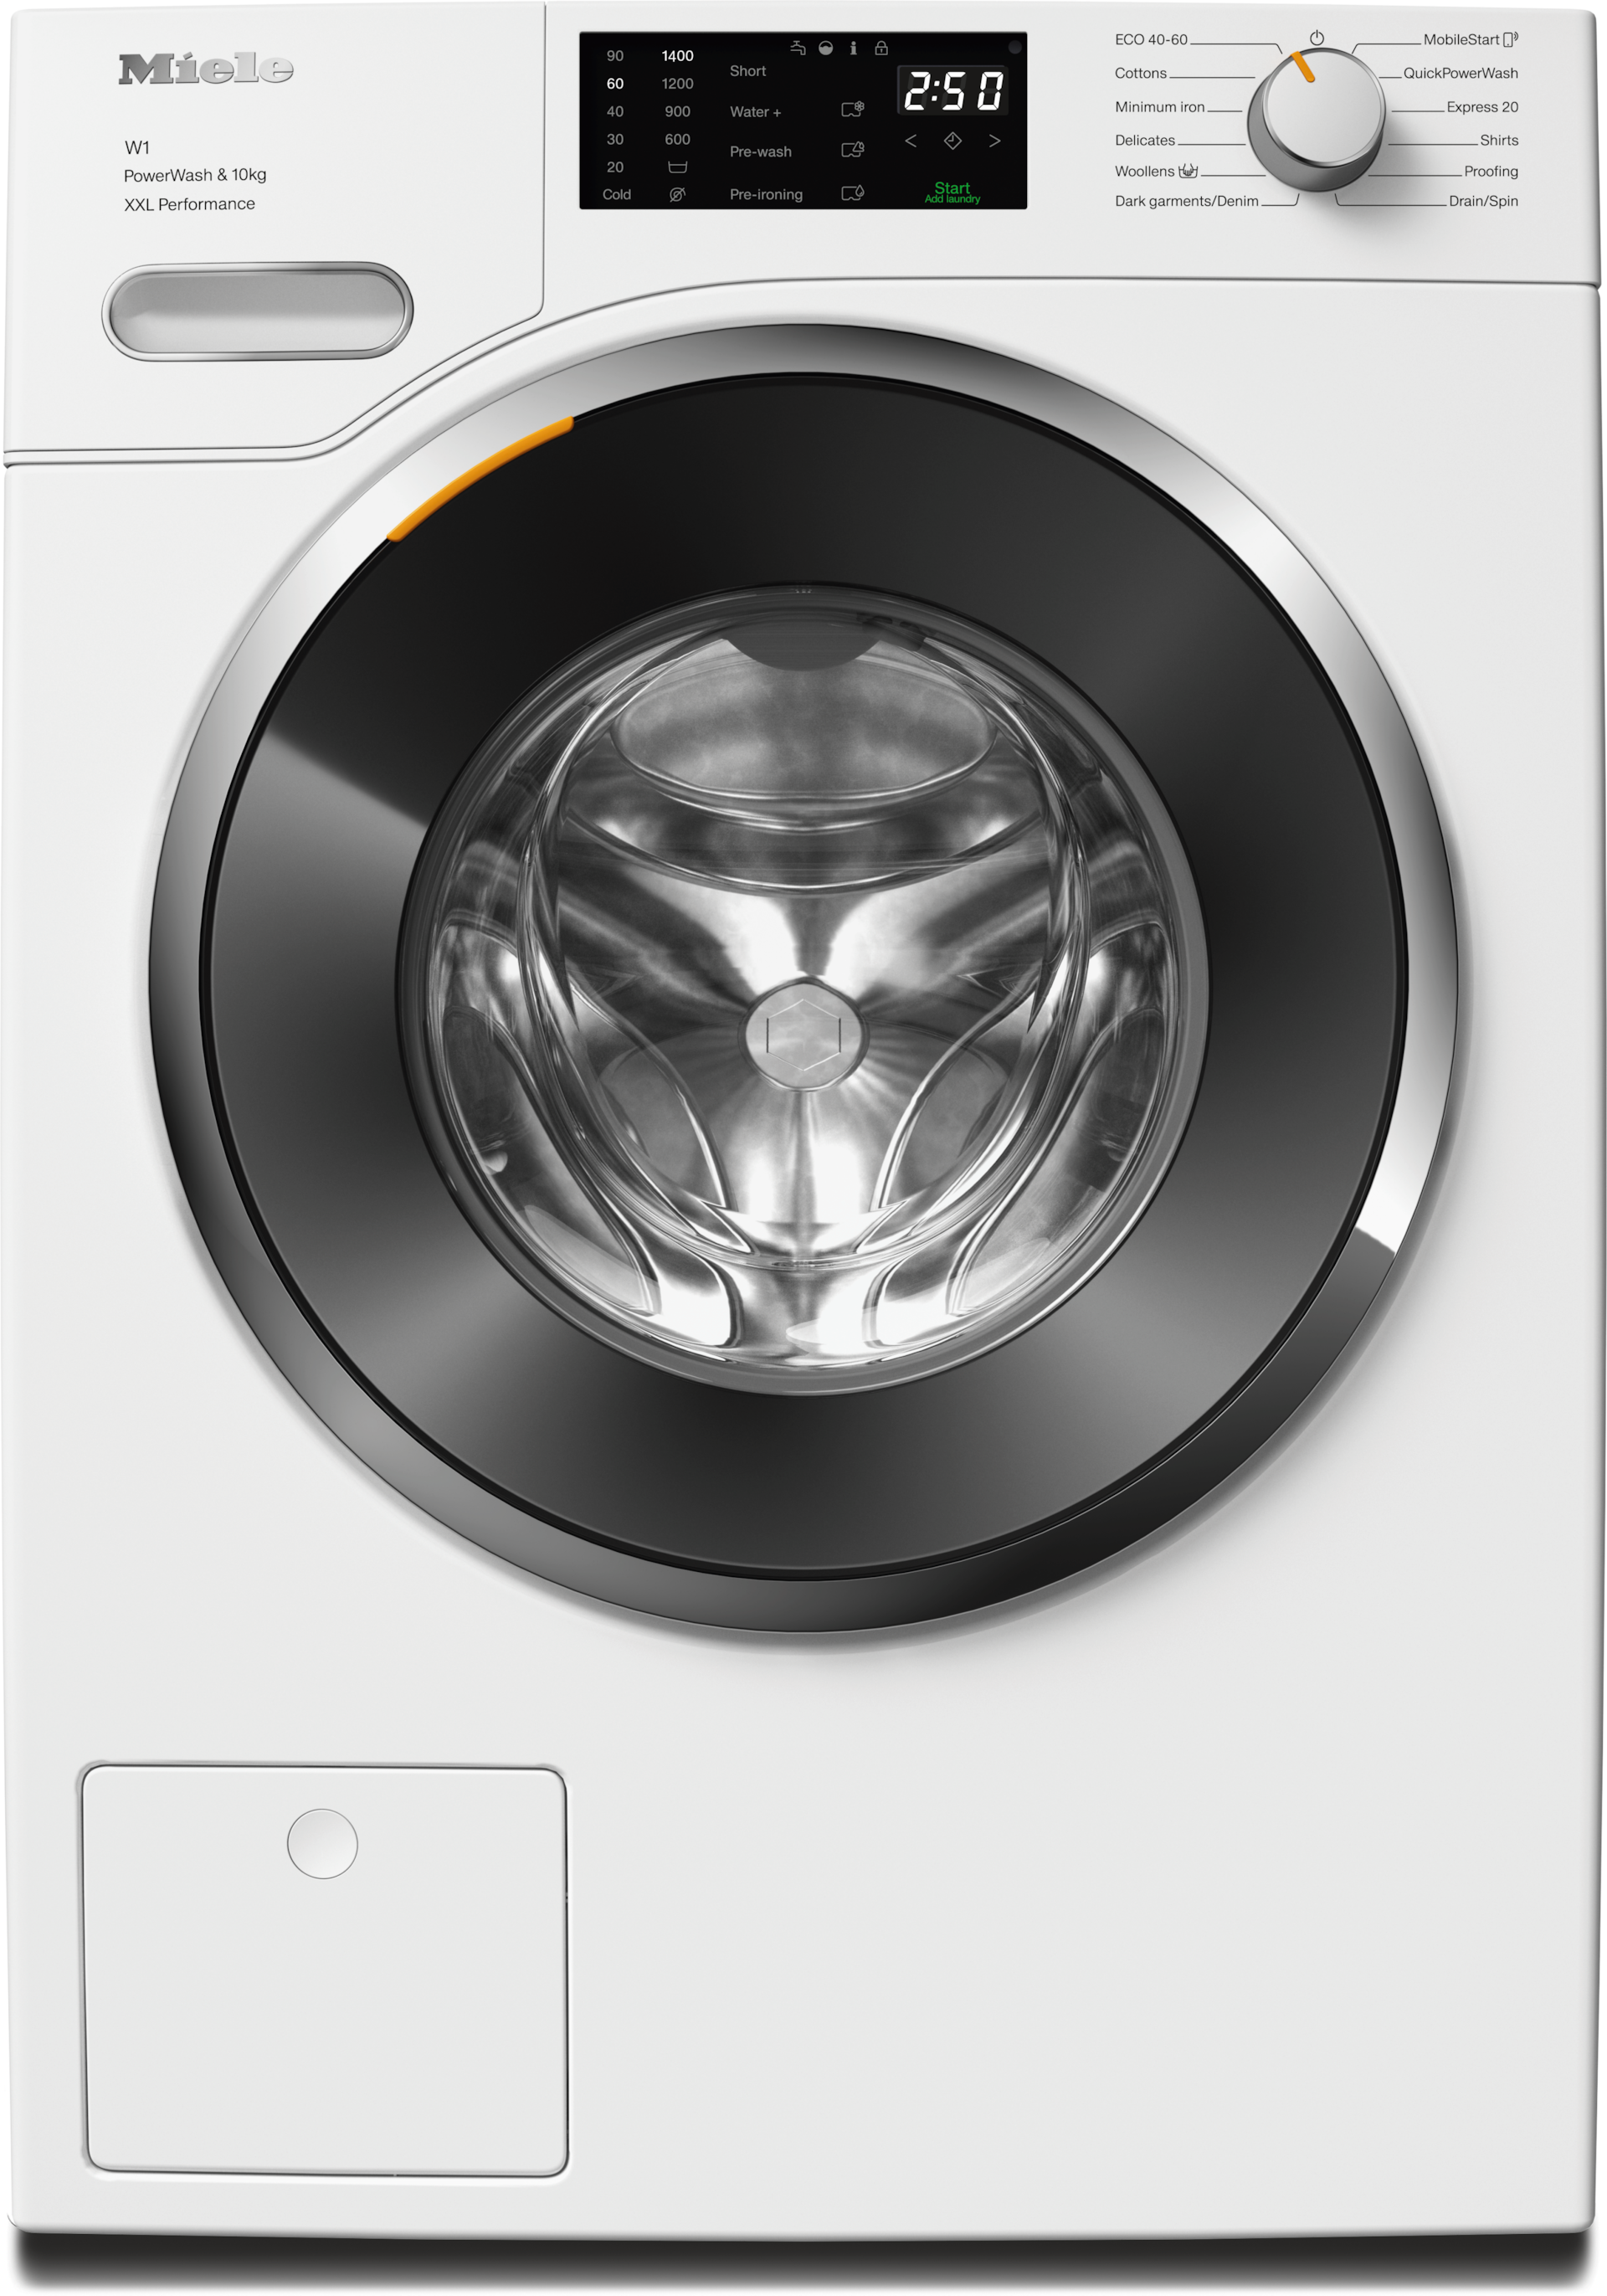 Washing machines - WWK360 WCS PWash&10kg Lotus white - 1